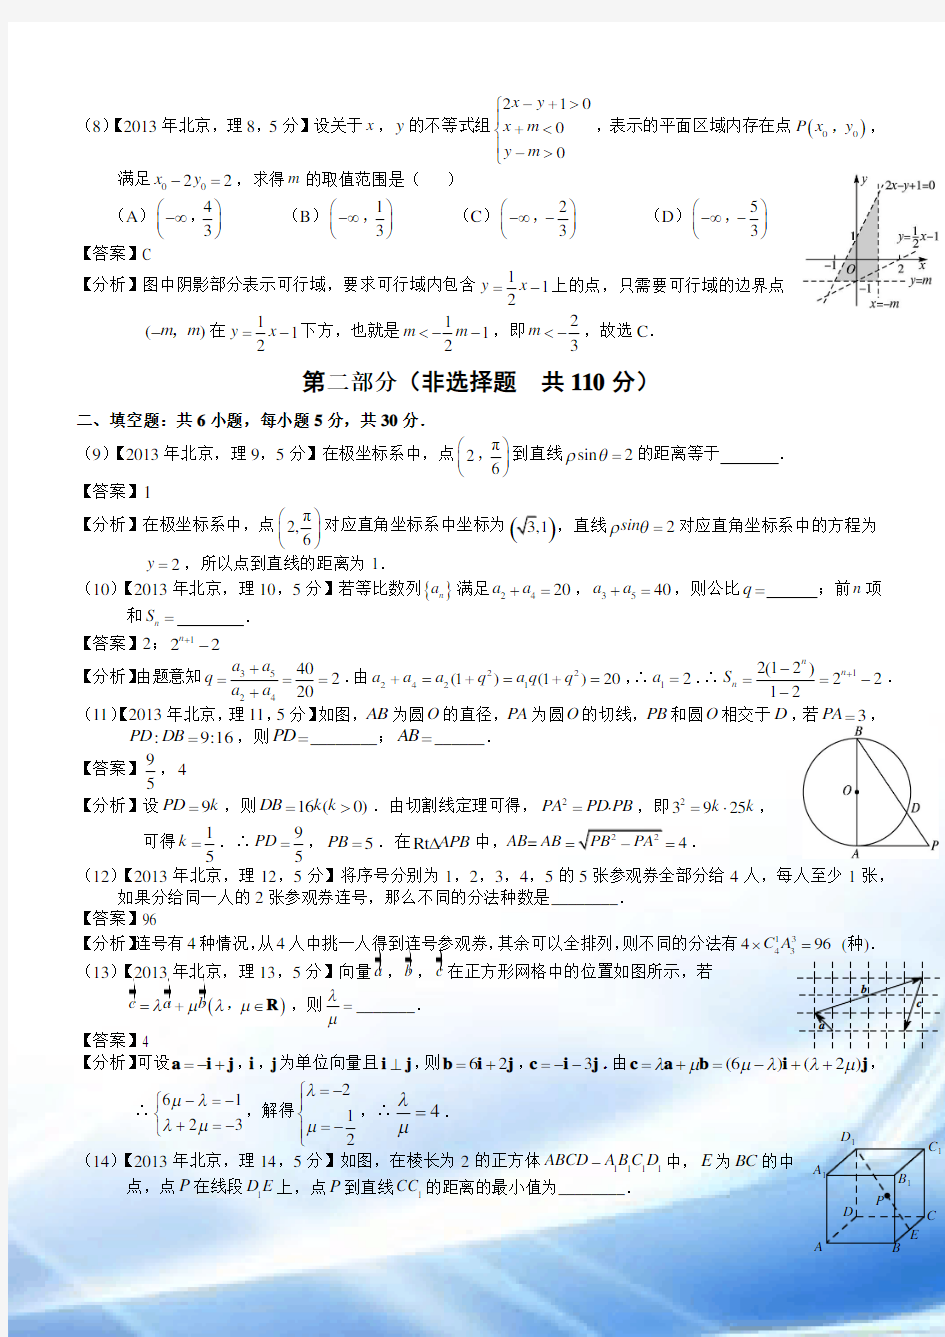 2013年高考北京理科数学试题及答案(word解析版)